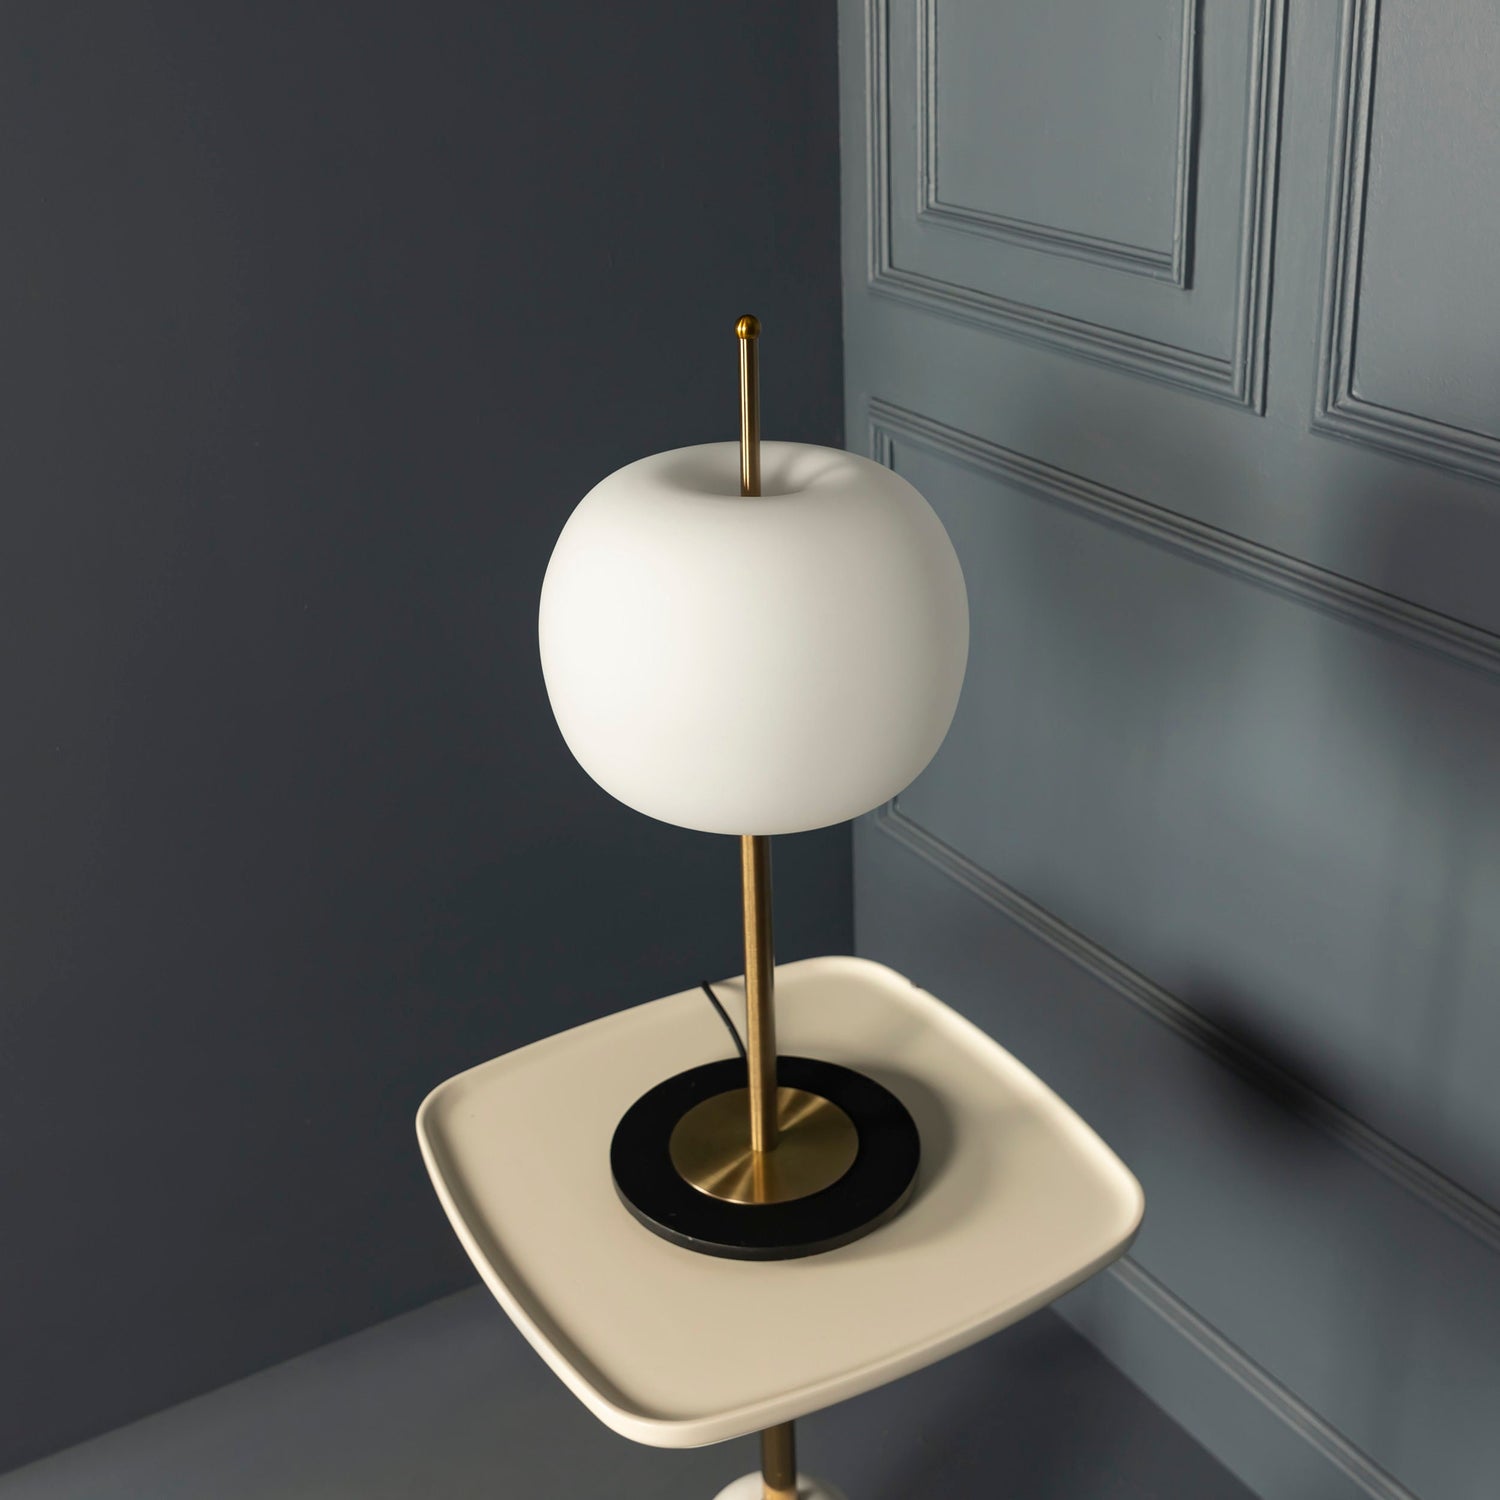 Unique Milky Glass LED Table Lamp, Art Deco Brass Modern Desk Light, Handmade Small Bedside Lamp, Bedroom Decor Lamp MODEL : APPLE